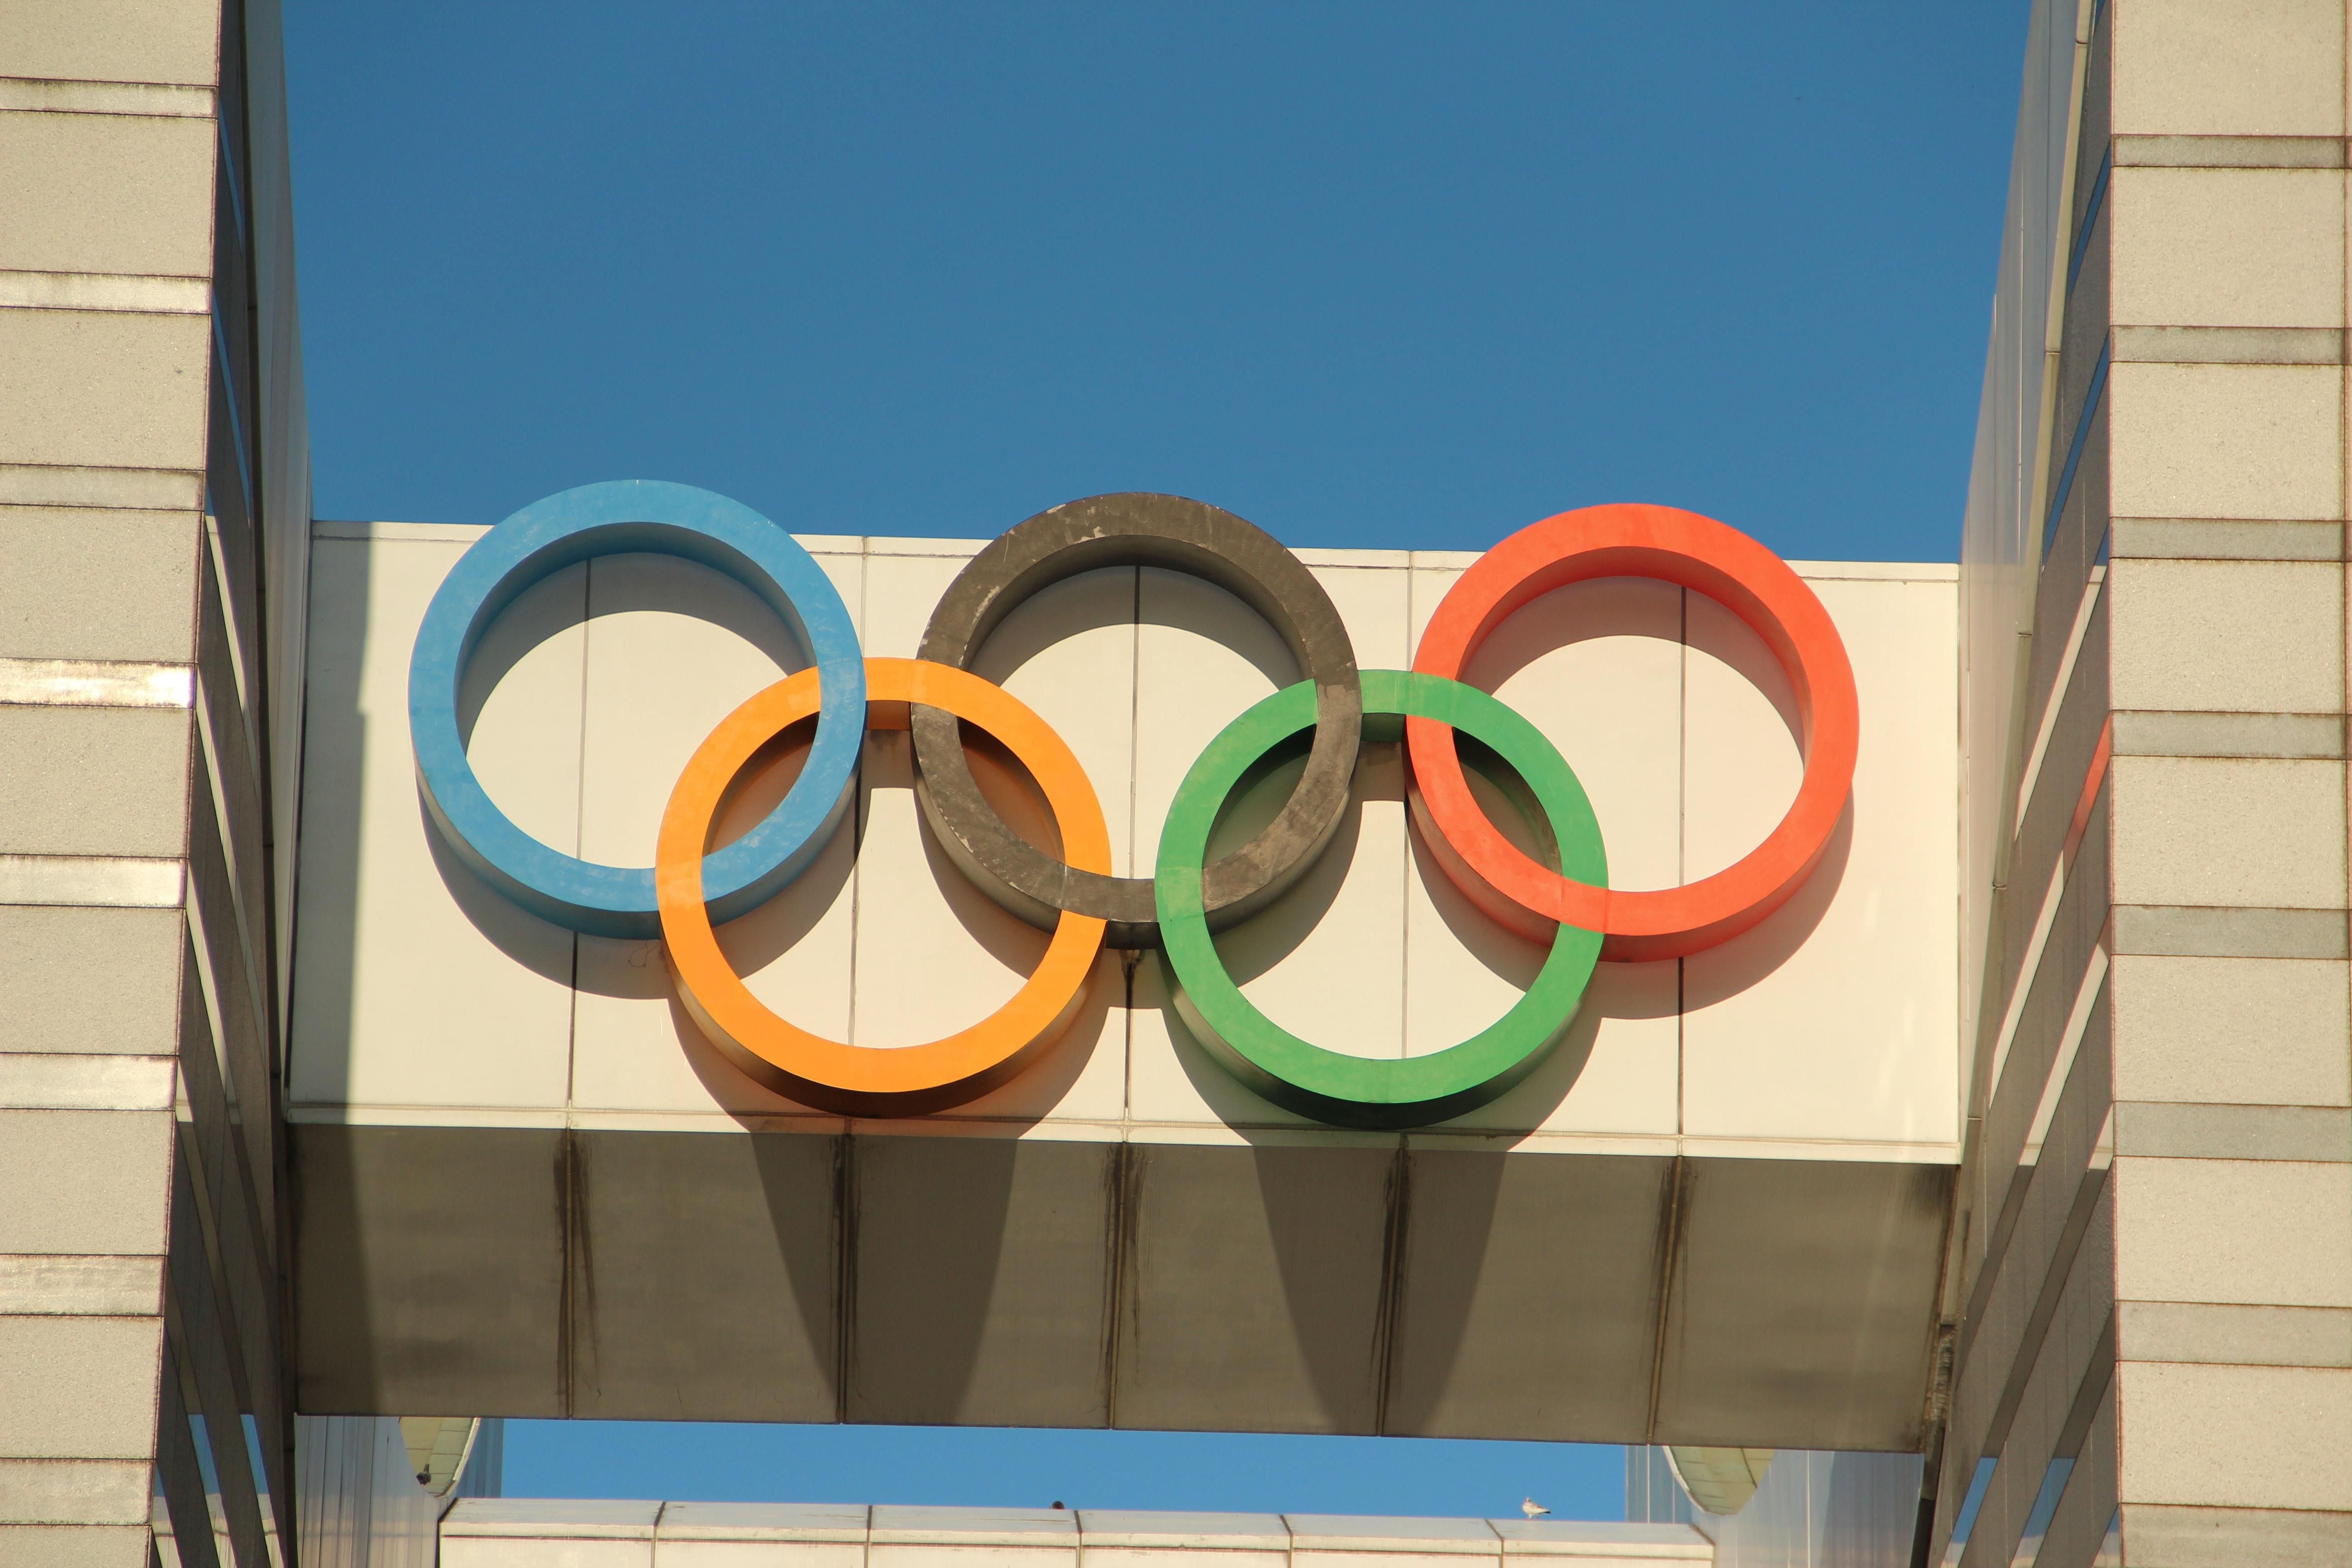 Ще 10 нових хворих на COVID-19 виявили на Олімпіаді в Токіо - Новини Здоров’я